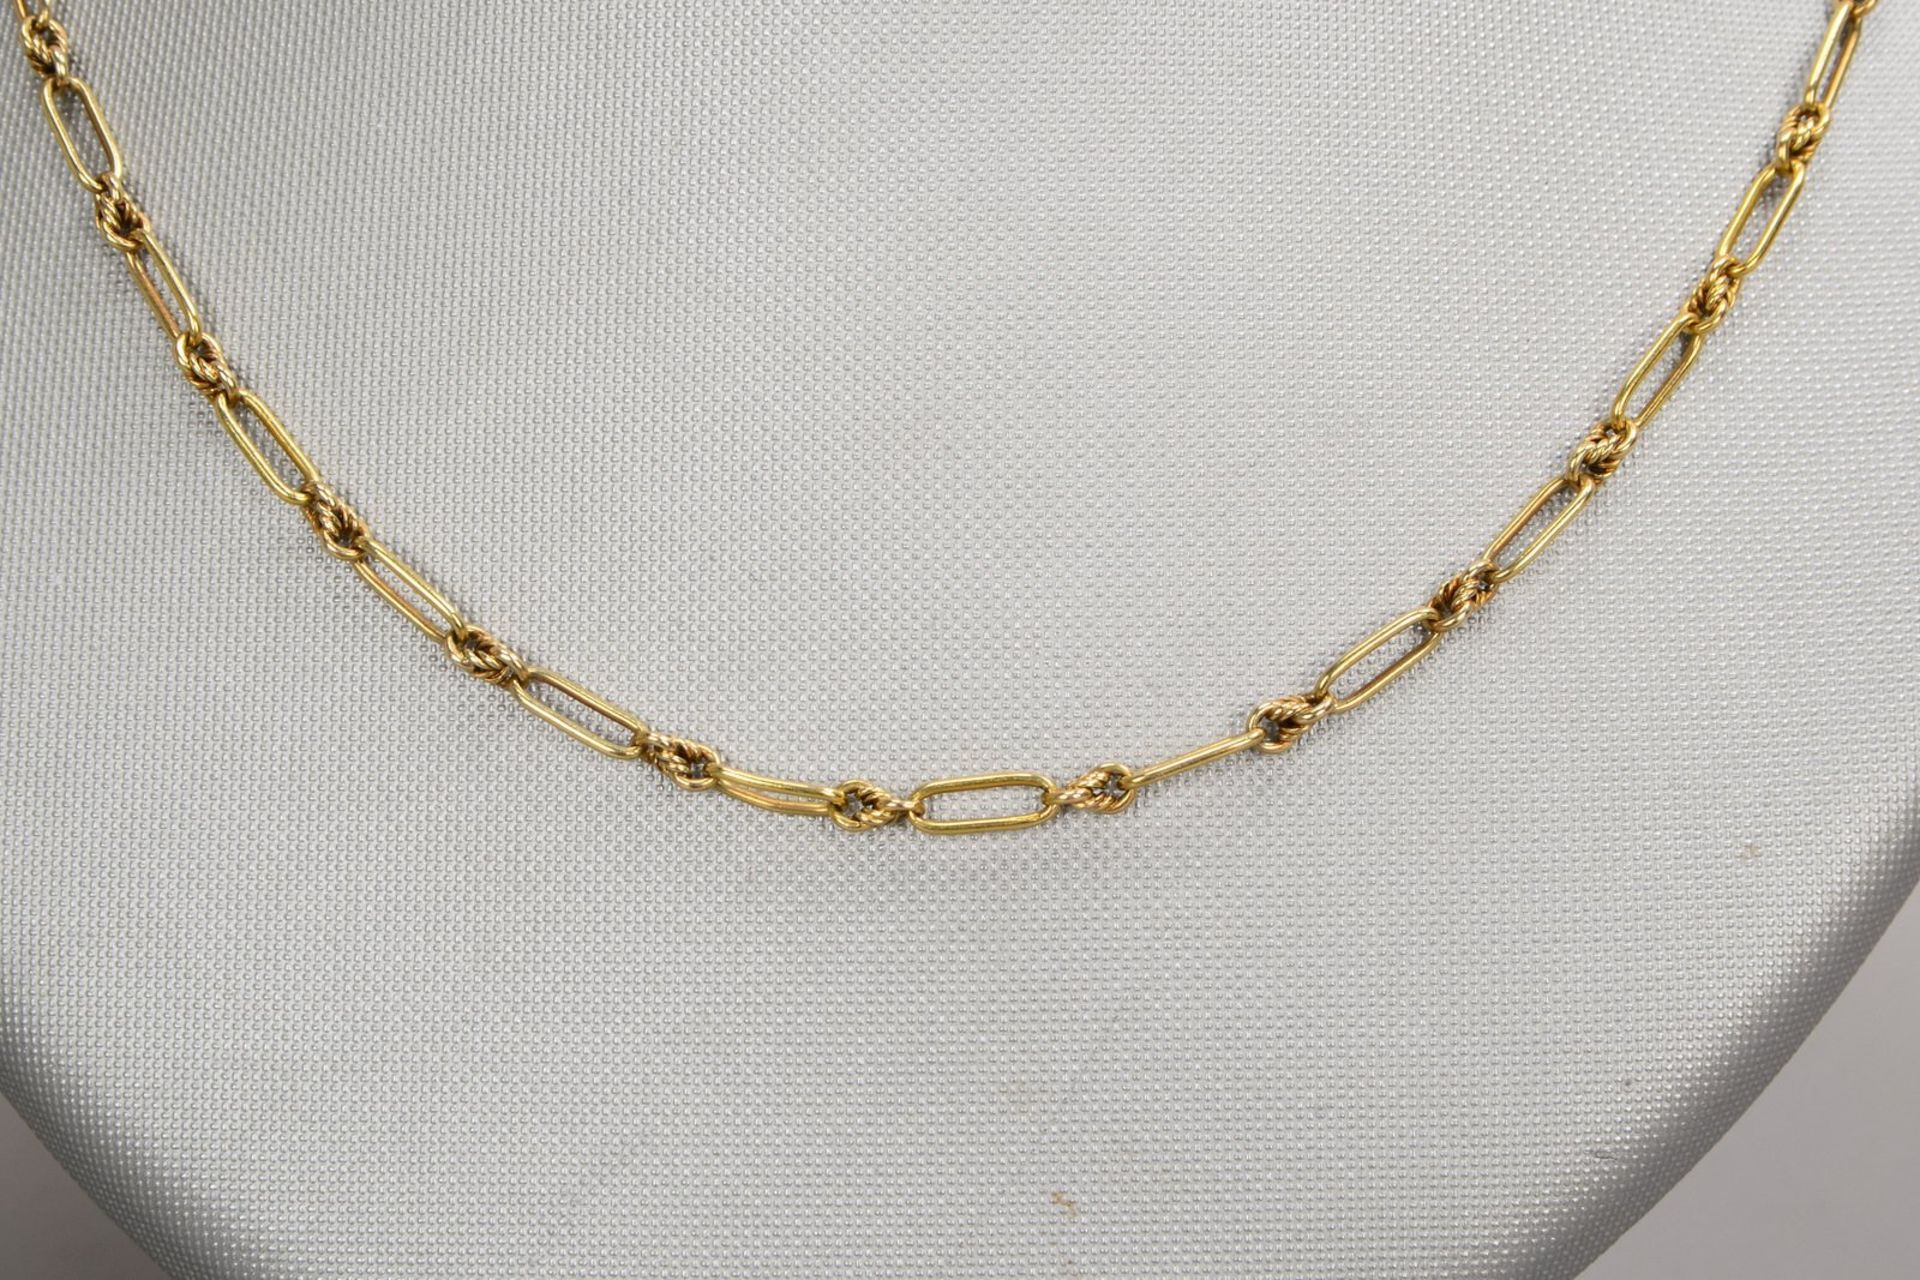 Halskette, 585 GG (gepr.), Ankerglieder geknotet, mit Federringschließe; Länge 54 cm - Bild 2 aus 2